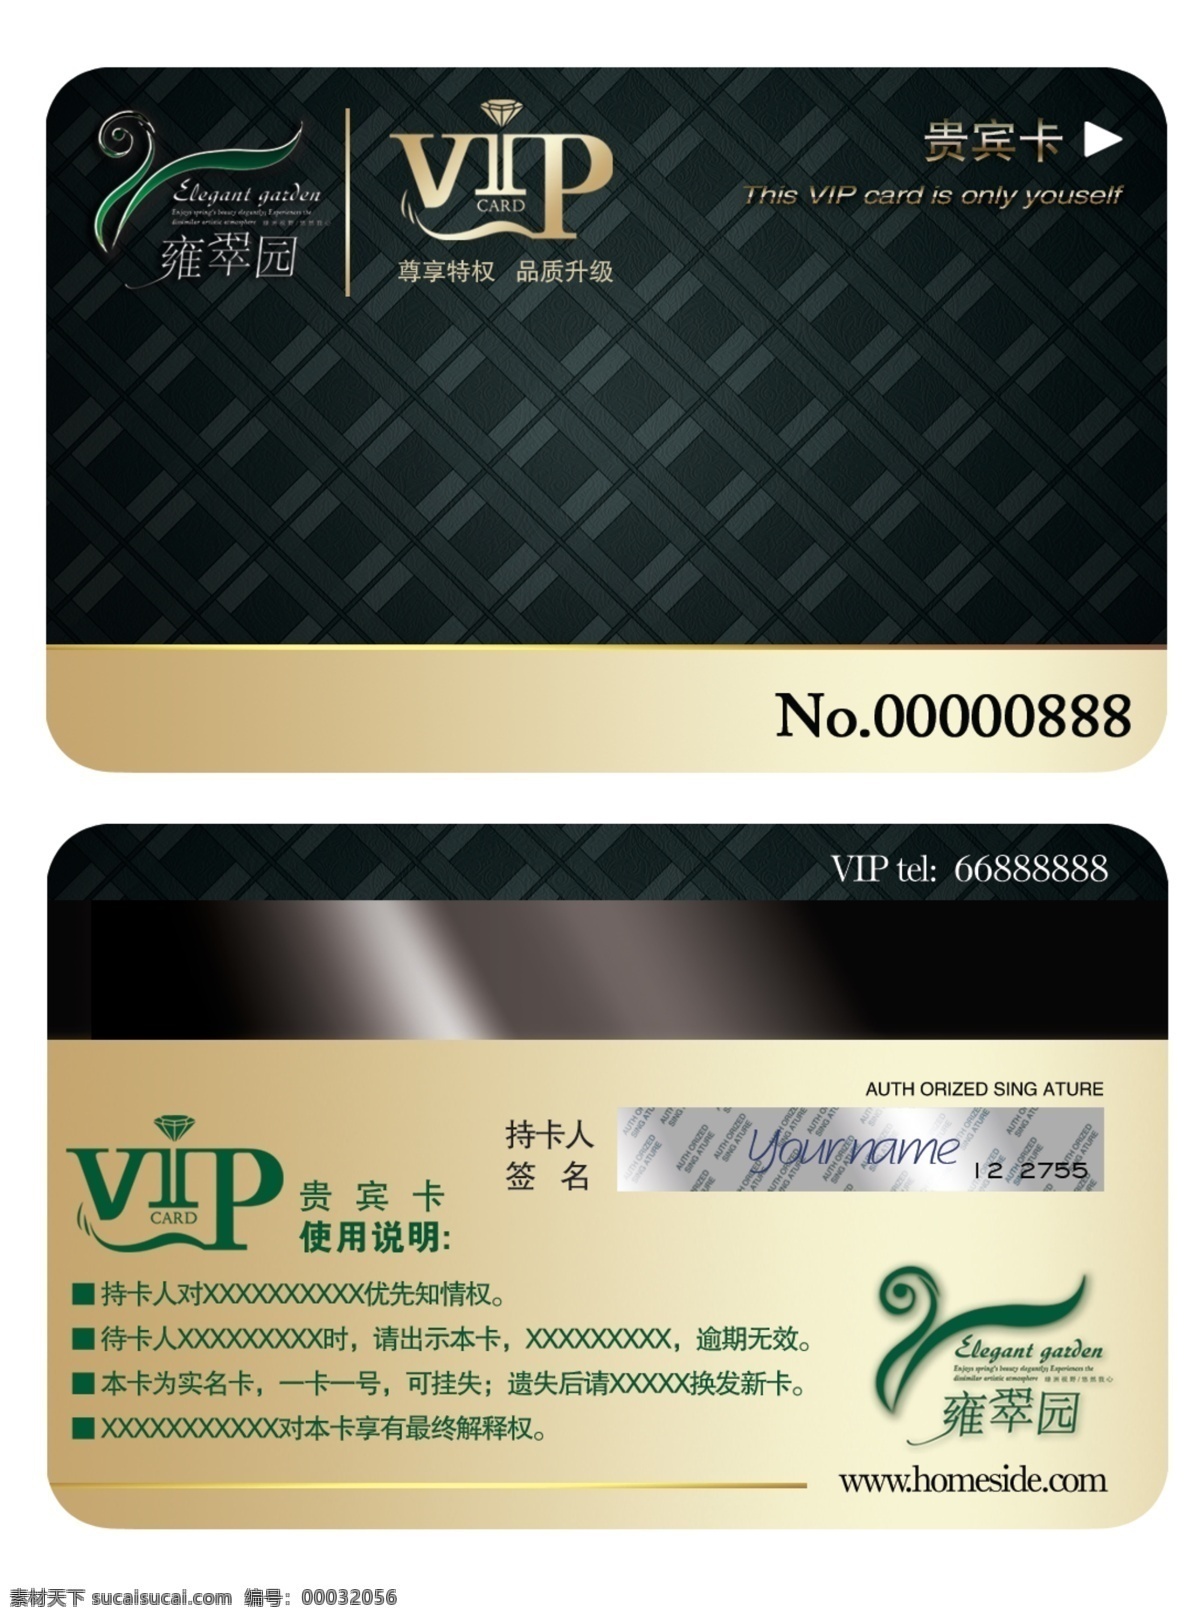 vip贵宾卡 会员卡 尊享特权 品质升级 优惠卡